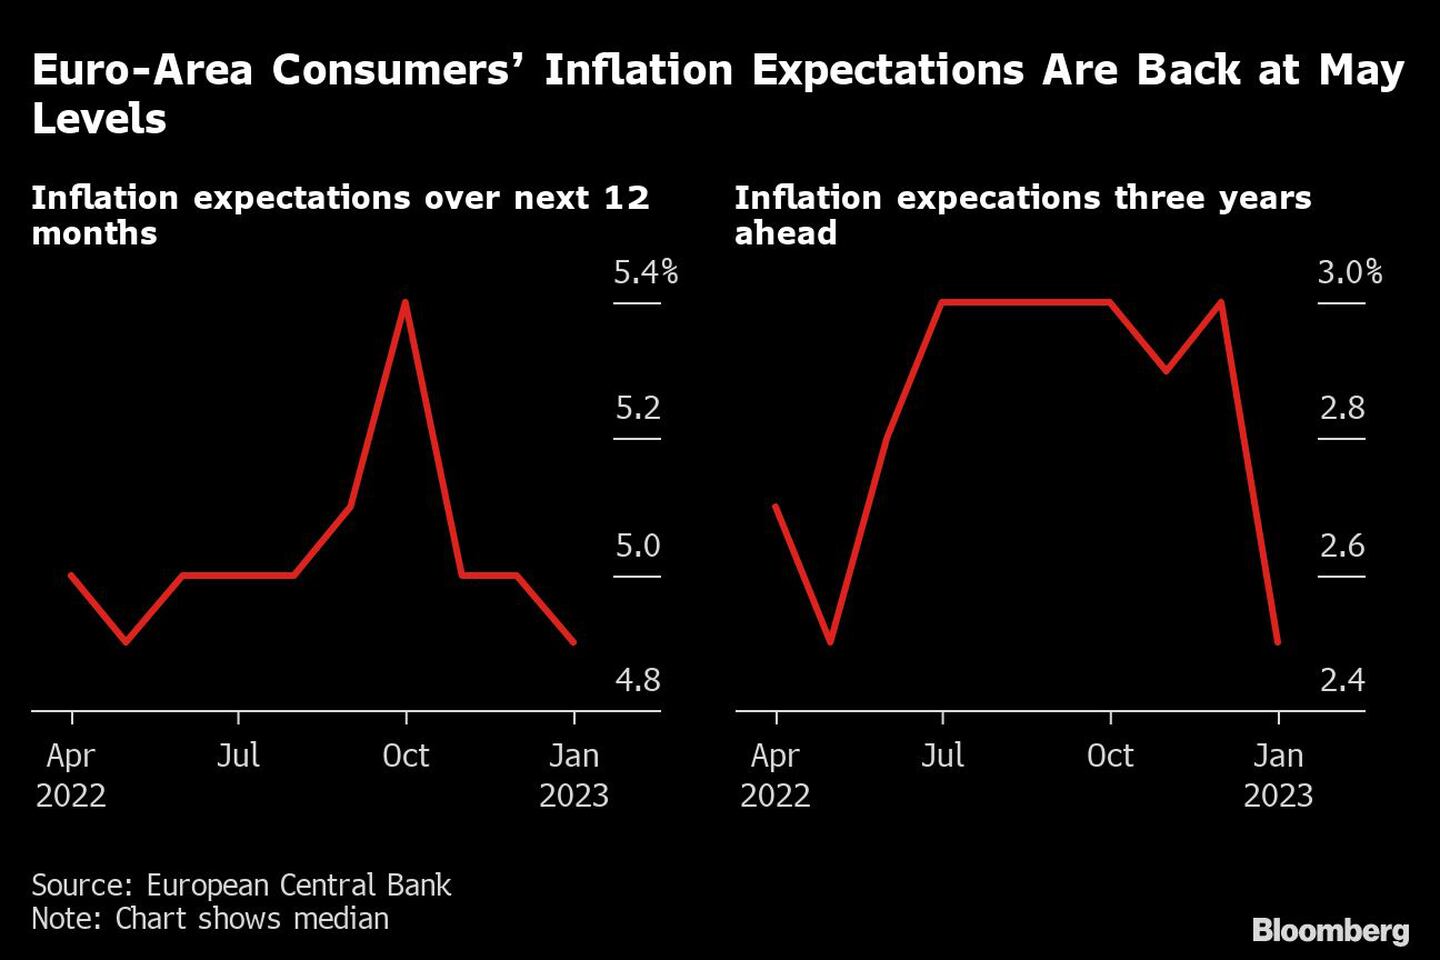 A la izquierda: expectativas de inflación a 12 meses. A la derecha, expectativas de inflación a 3 añosdfd